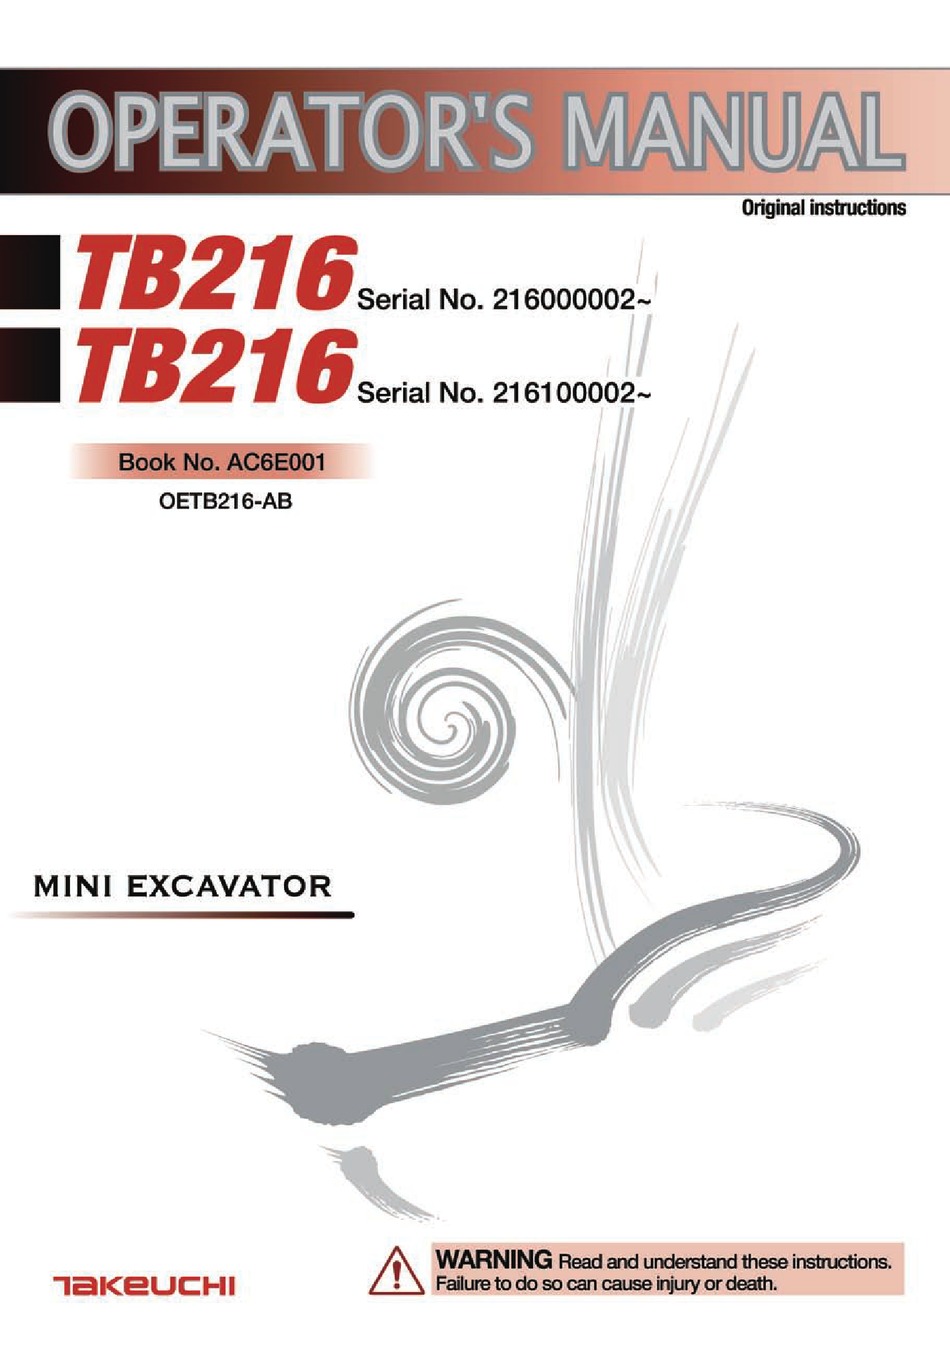 TAKEUCHI TB216 OPERATOR'S MANUAL Pdf Download | ManualsLib